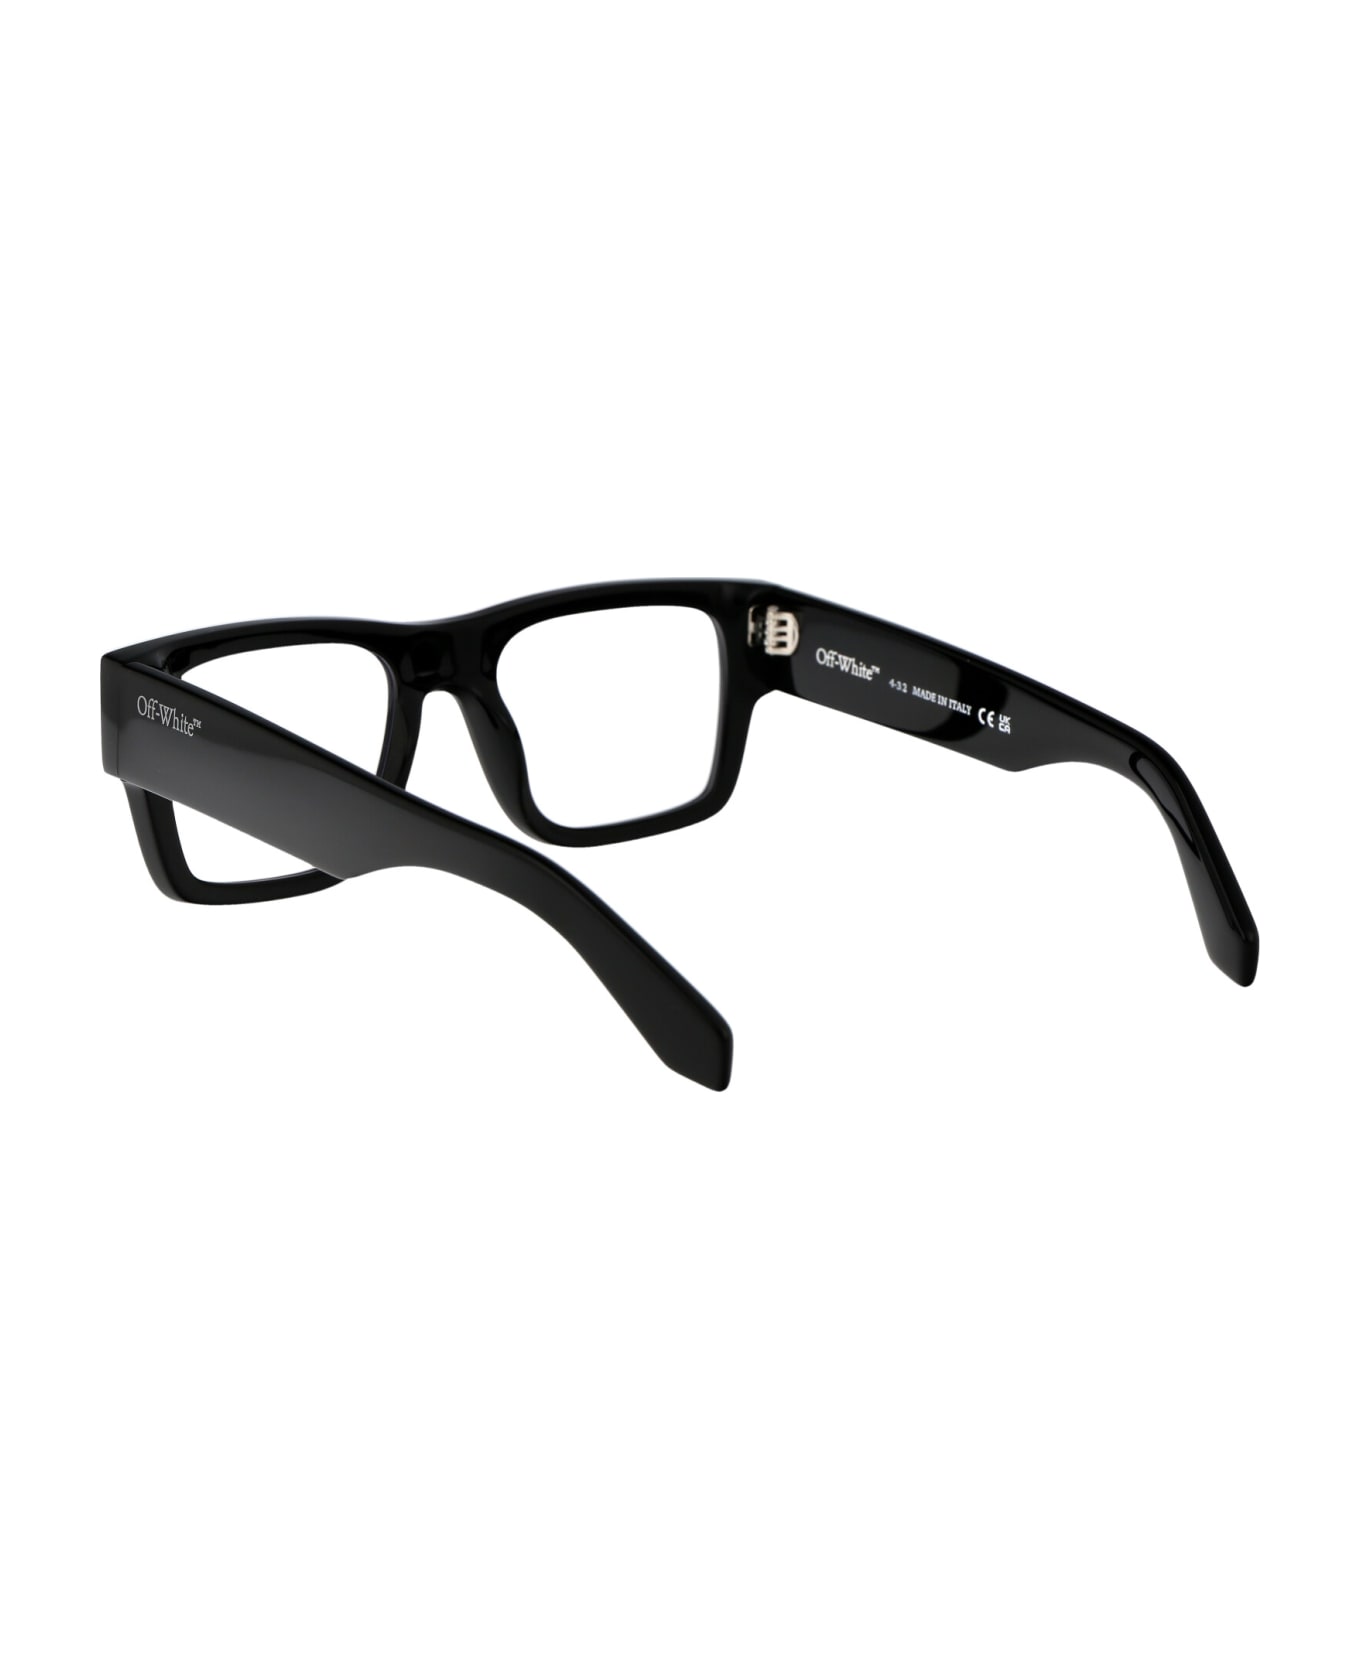 Off-White Optical Style 40 Glasses - 1000 BLACK アイウェア